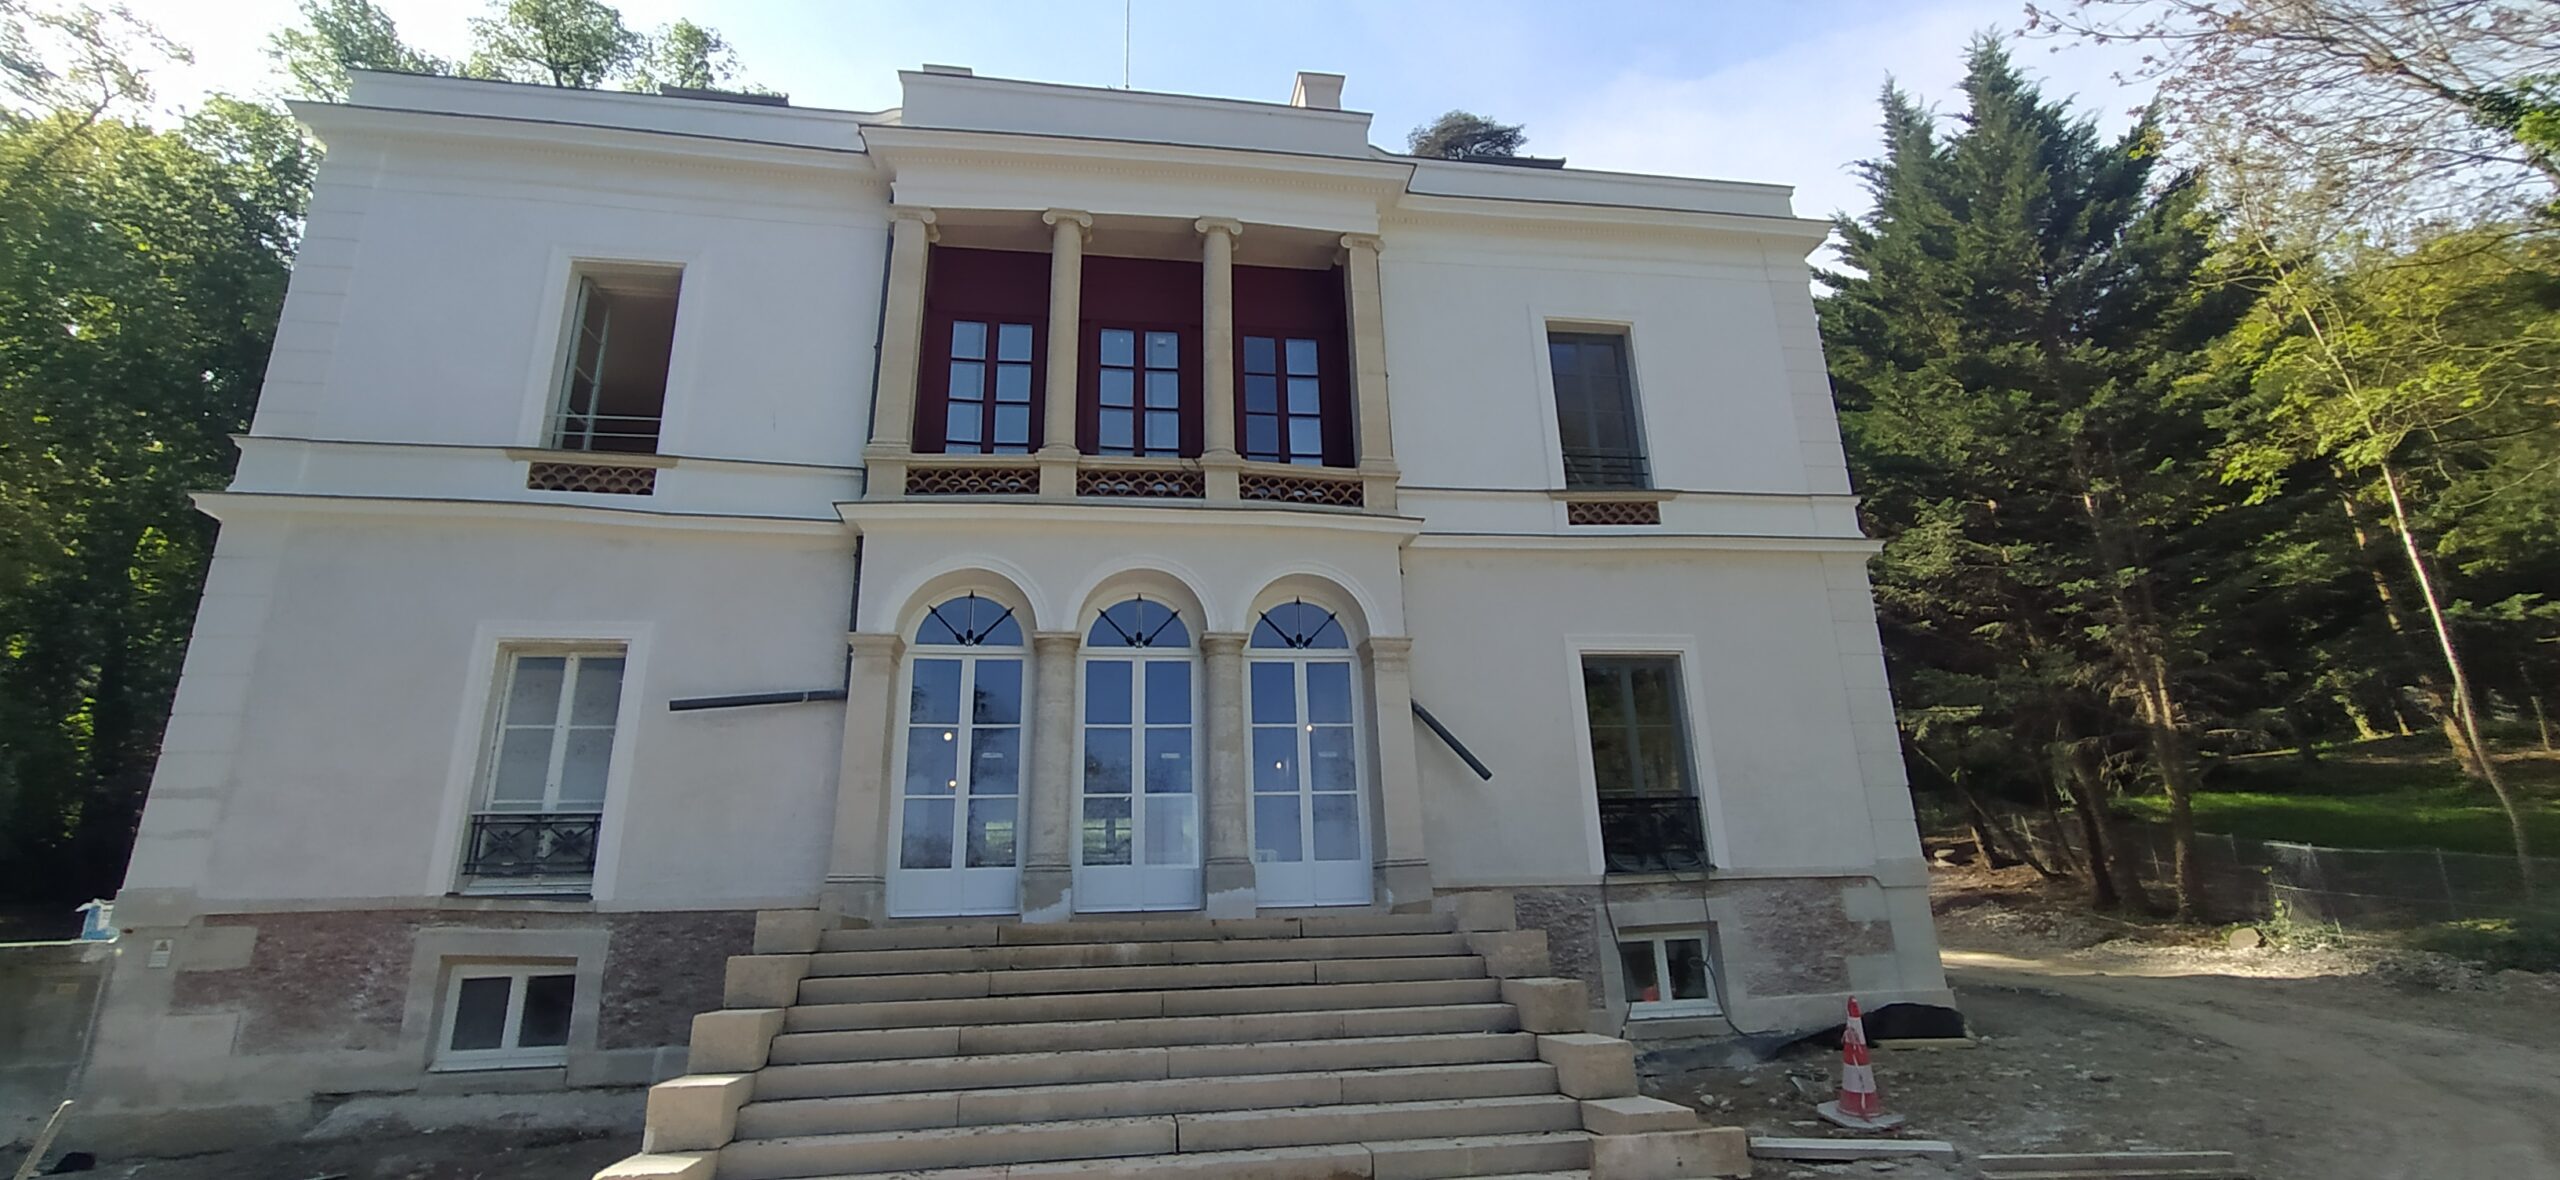 Villa Pauline Viardot, Bougival (78)